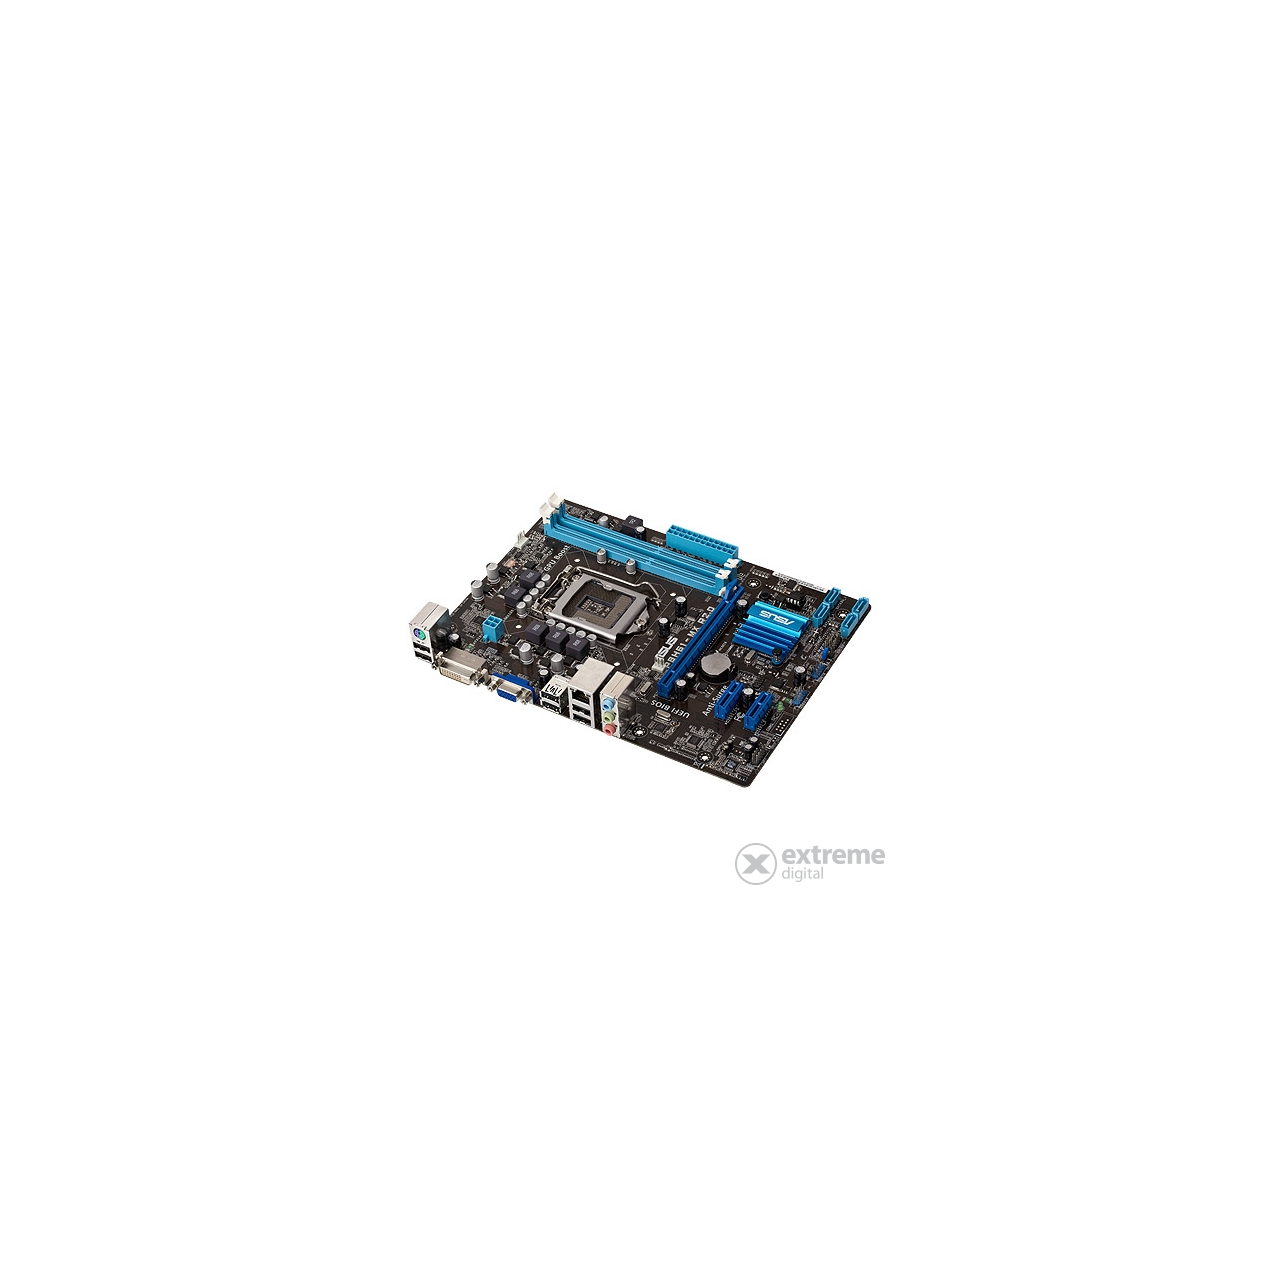 Asus P8H61-MX R2.0 Intel H61